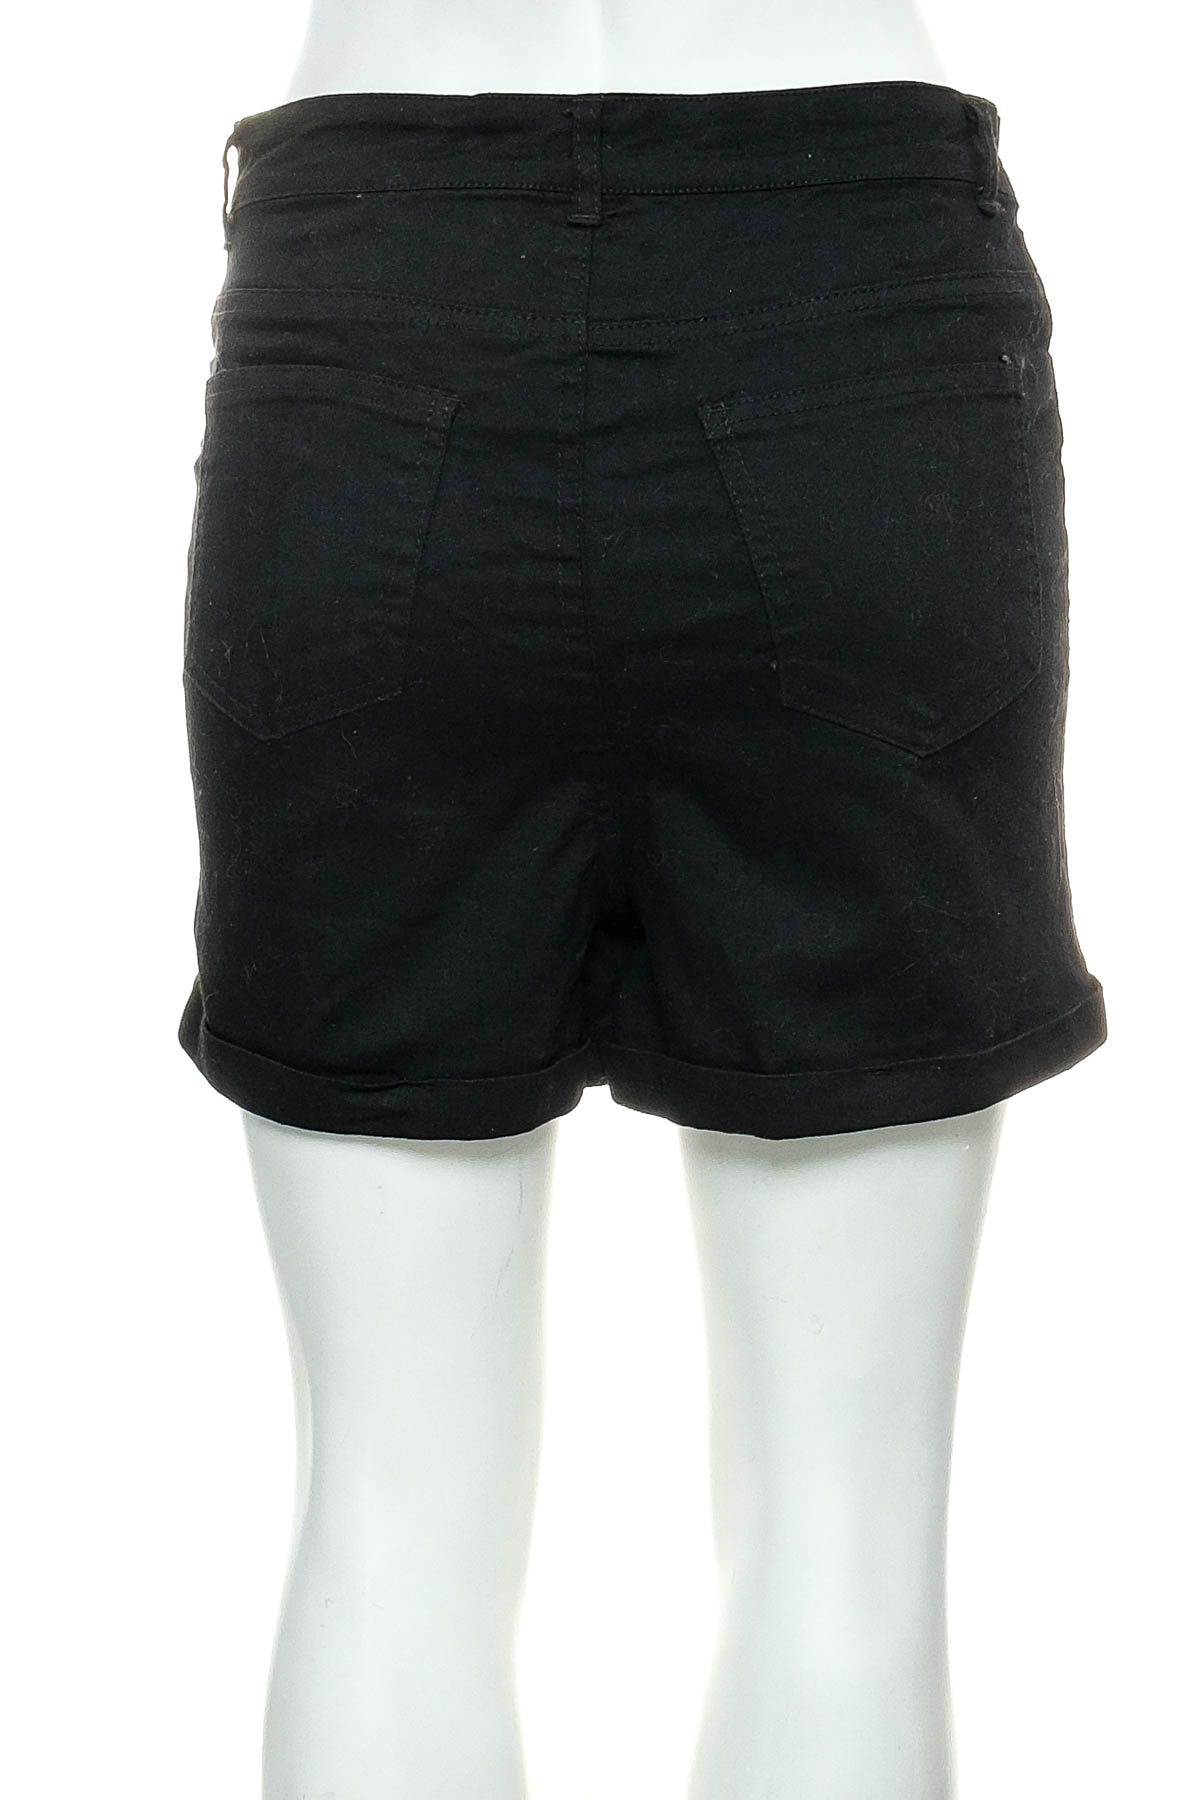 Female shorts - HAILYS - 1